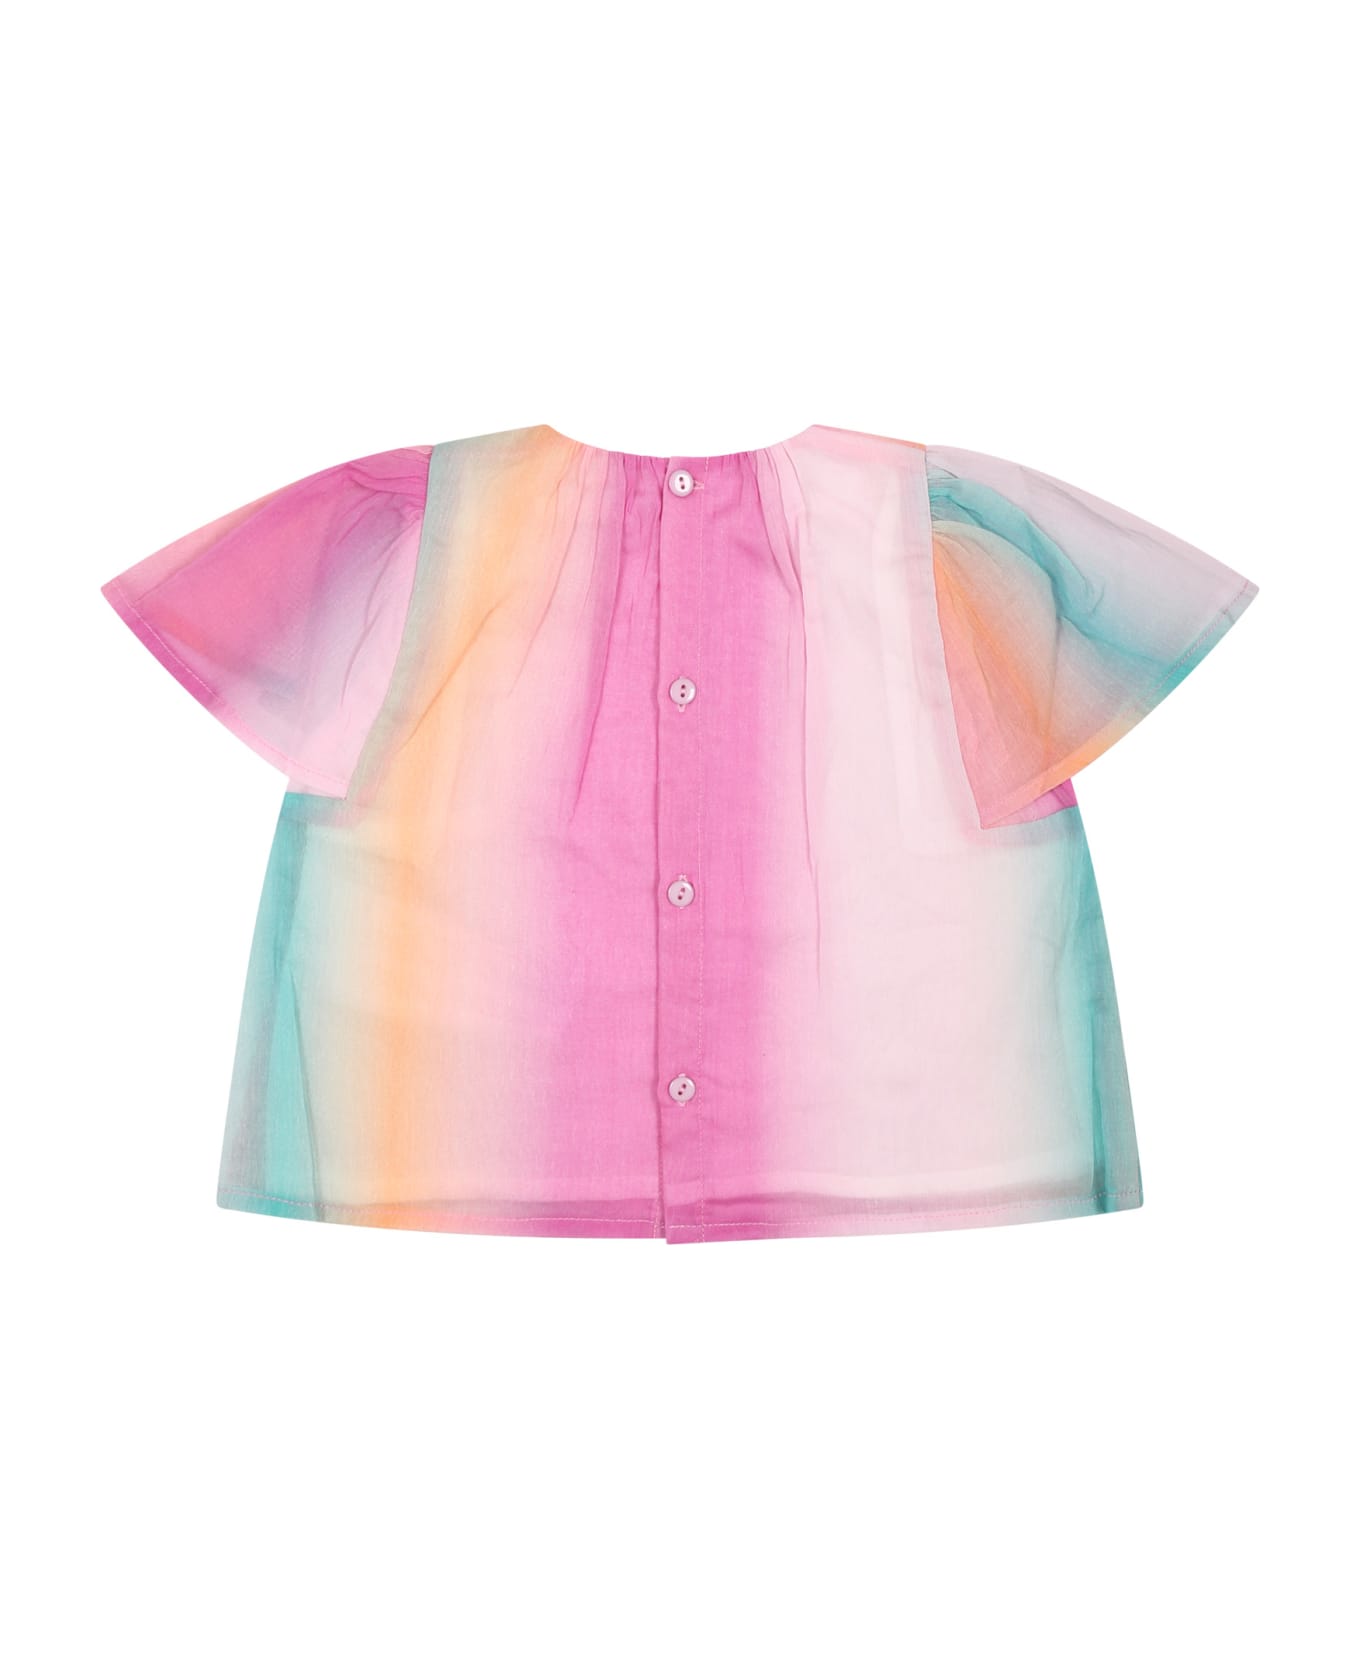 Chloé Multicolor Top For Baby Girl - Multicolor